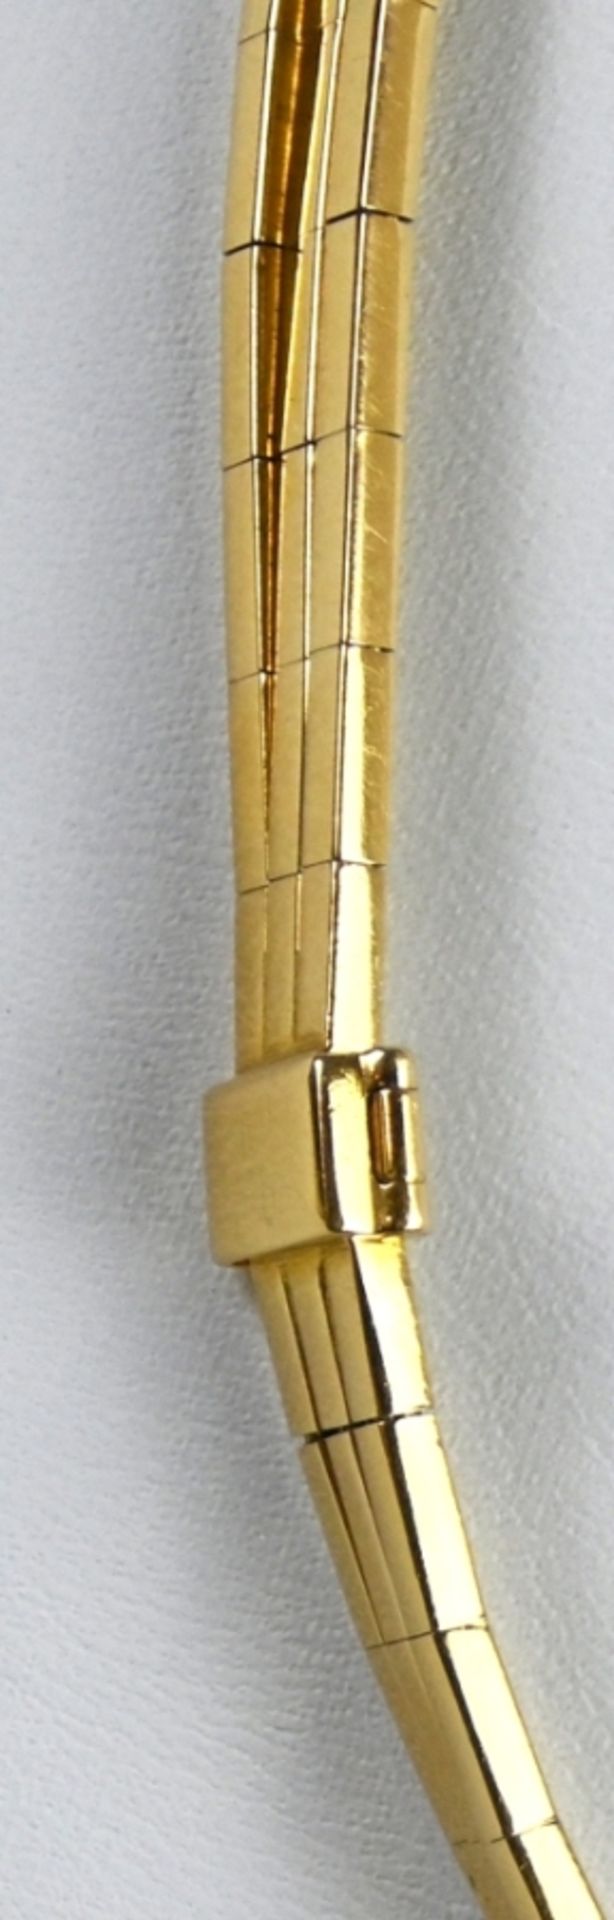 Collier aus drei Goldbögen, polierte Rechteckglieder, Verschluss mit Sicherheitsklappe, Gelbgold 75 - Bild 3 aus 3